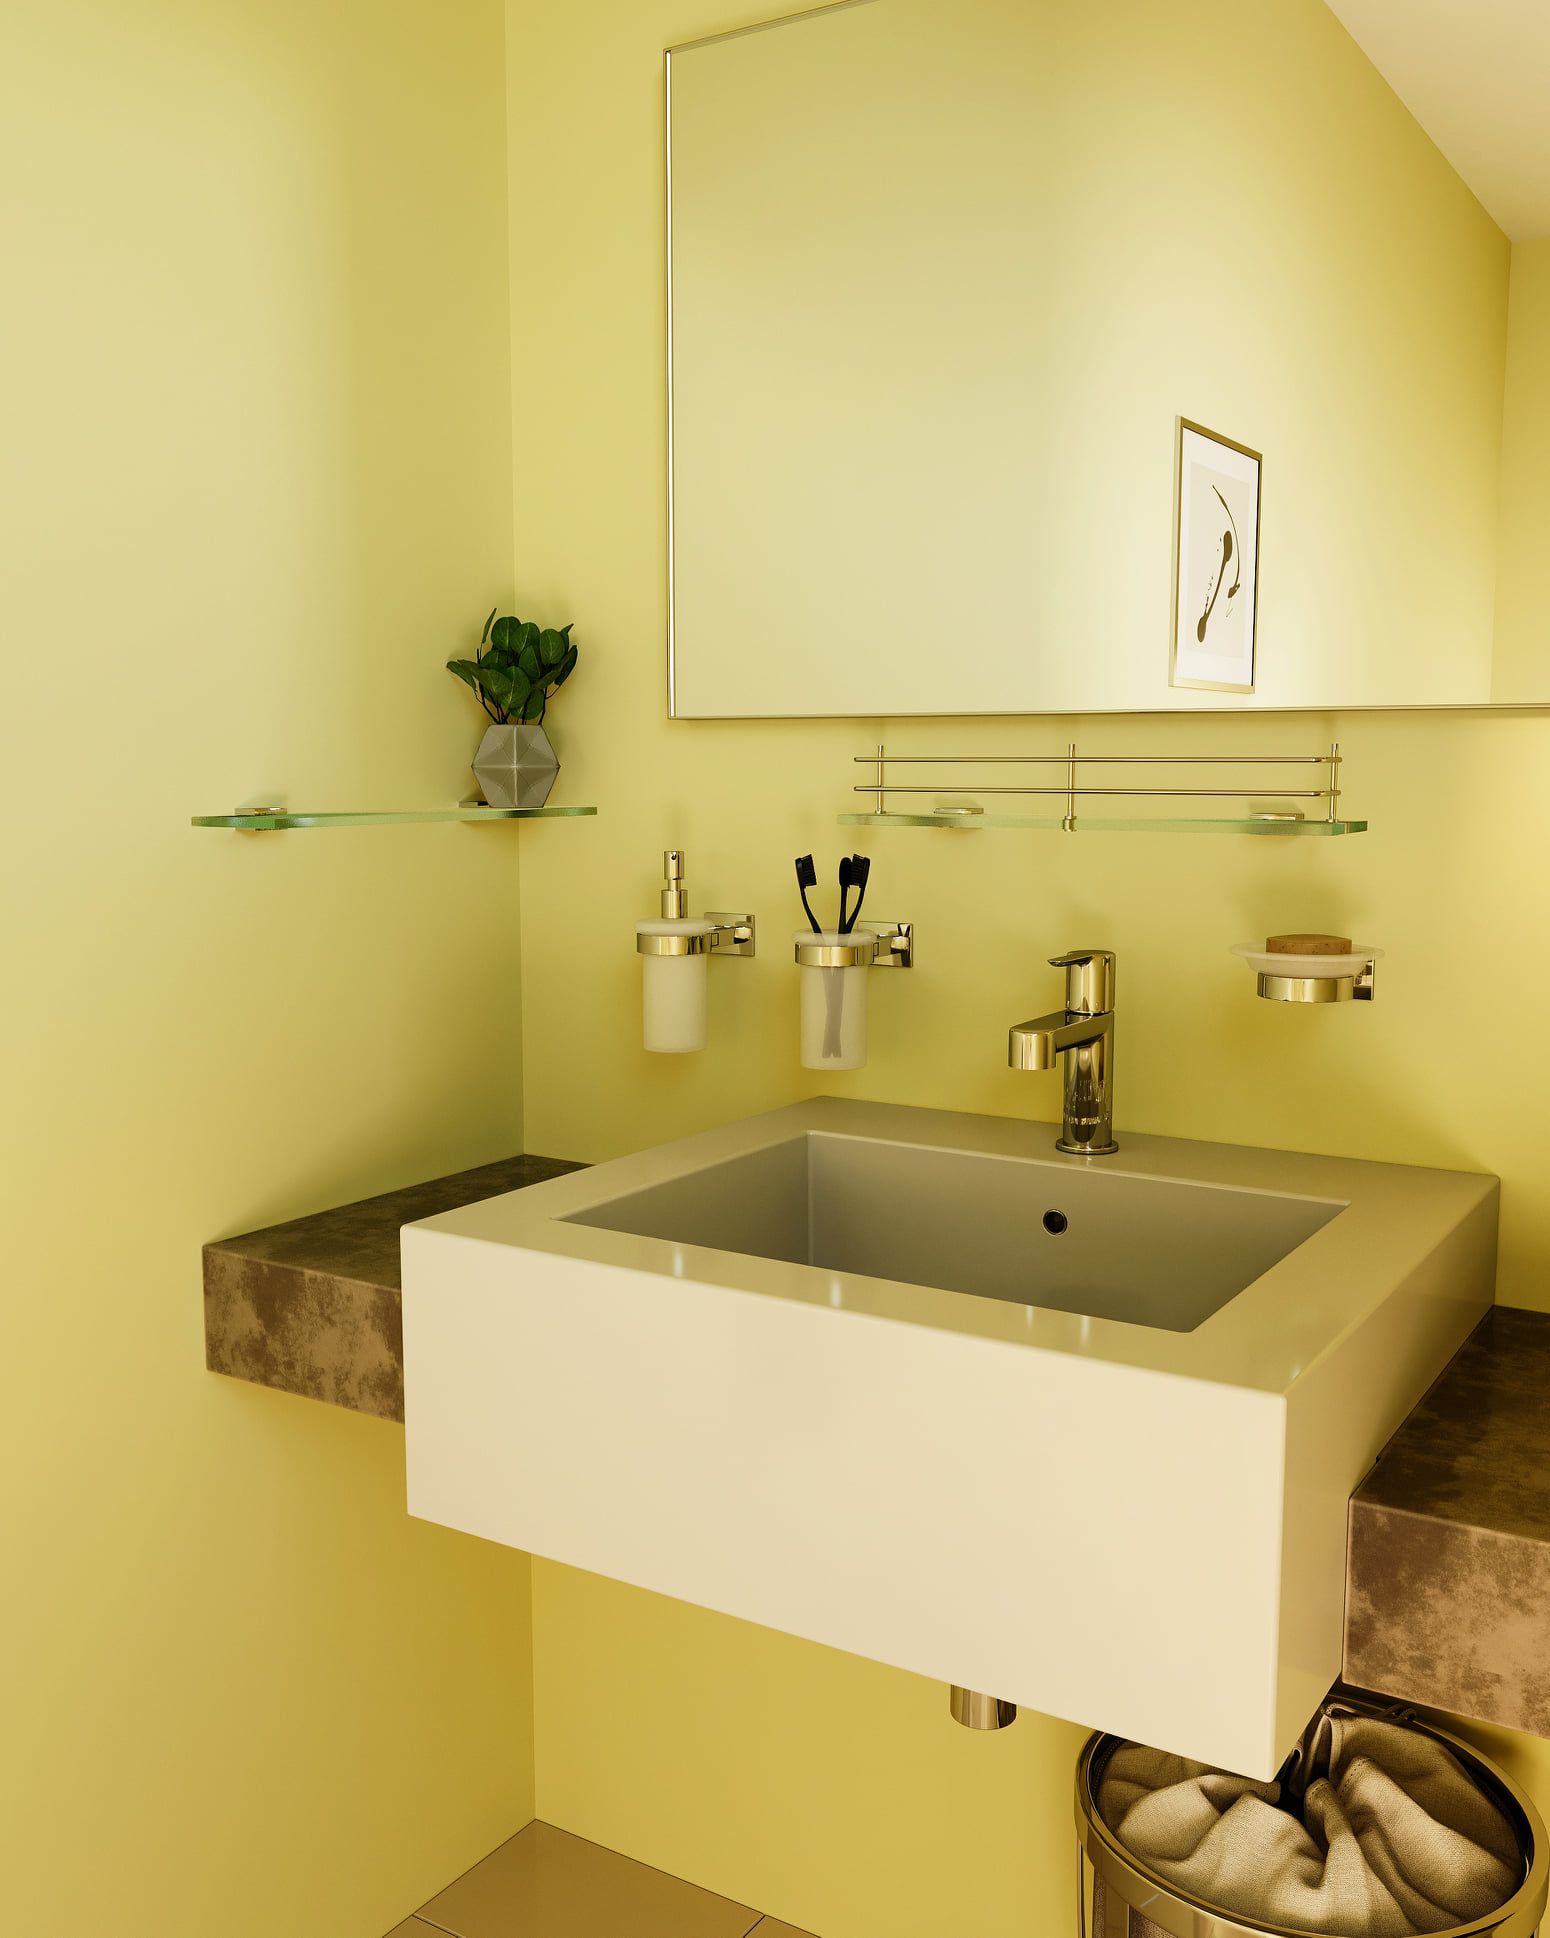 Mirella Tanzi Bathroom Design: soluzioni d’arredamento eleganti per il bagno